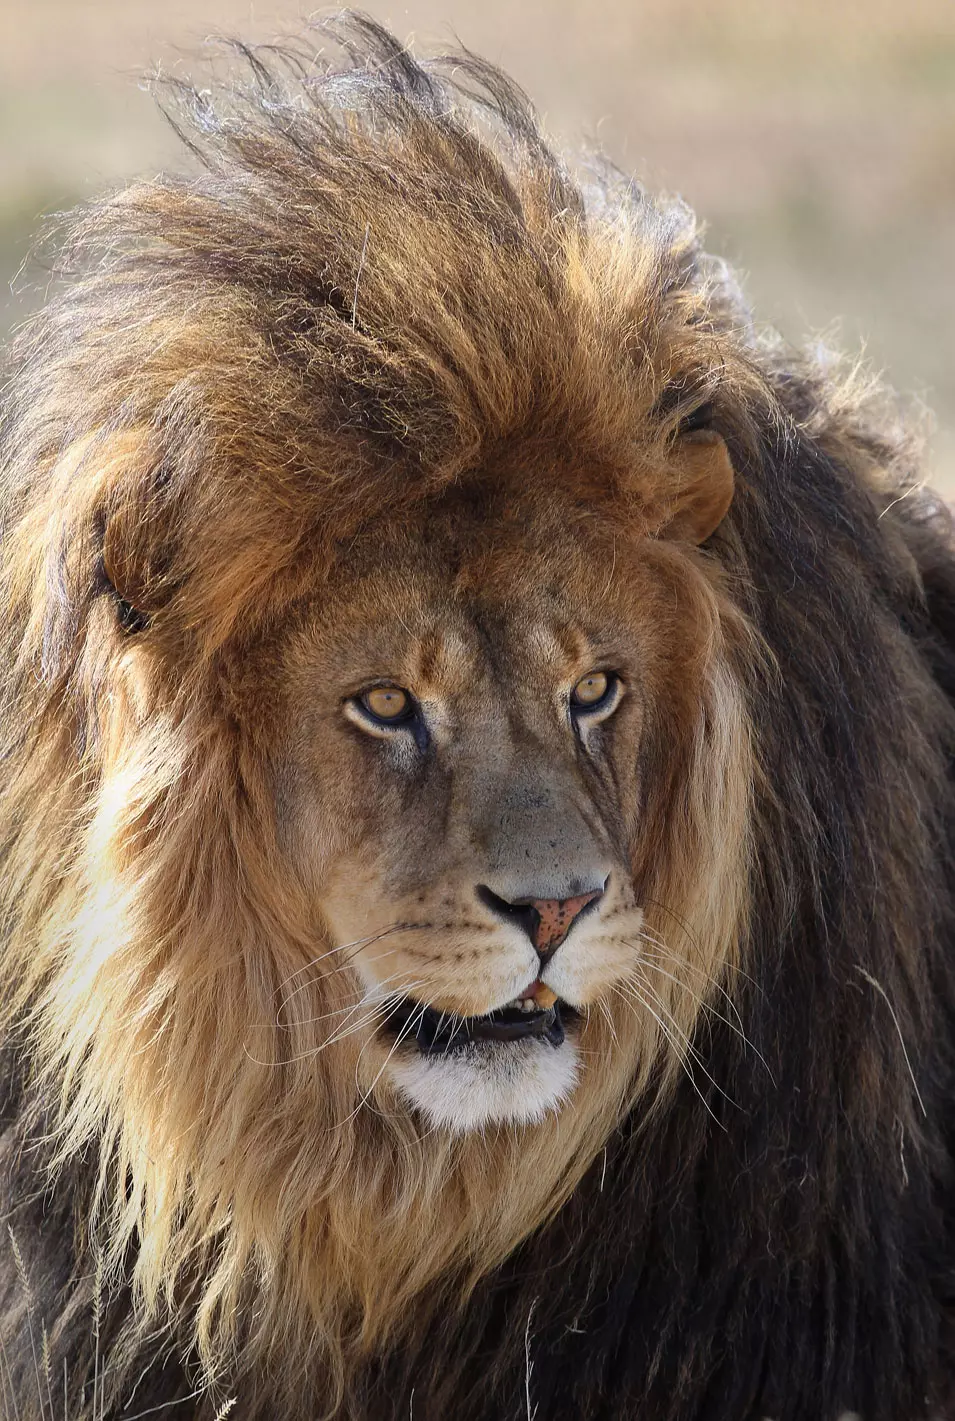 האריה "קוסקוס" גדל בגן החיות מגיל כמה שבועות